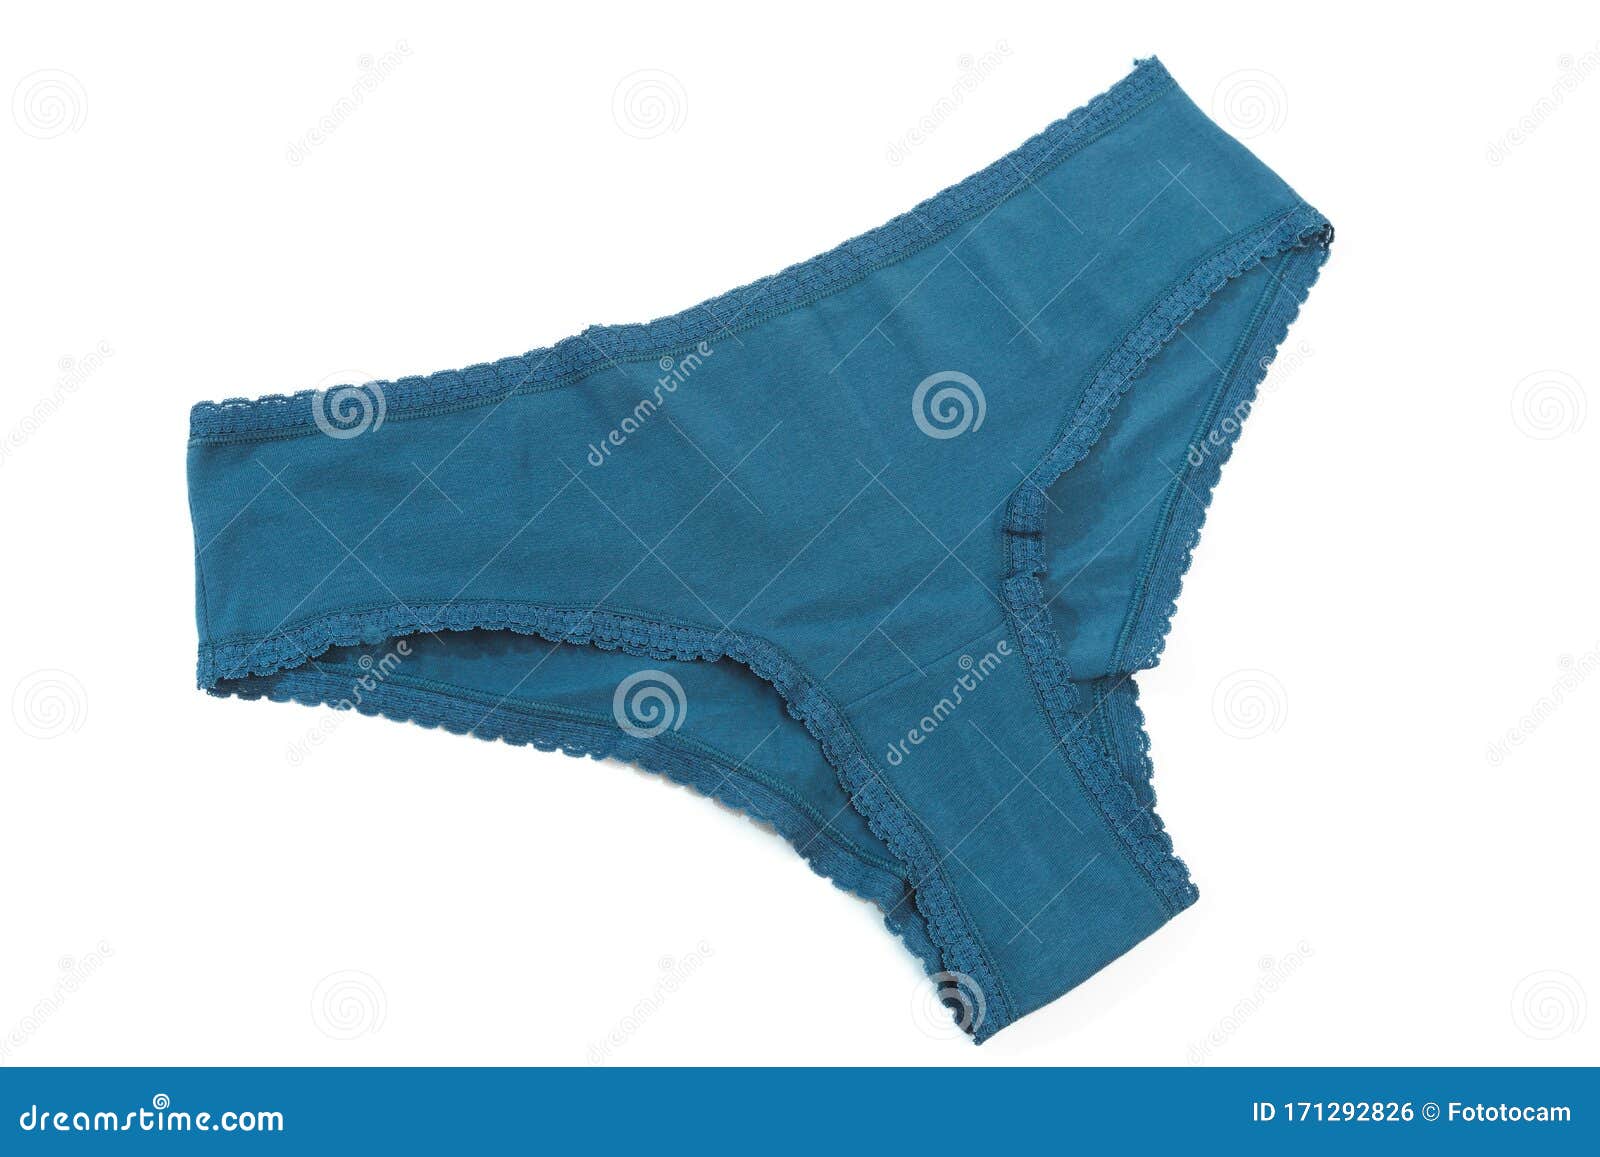 Female Panties Isolated Over White Background- Image Stock Photo ...